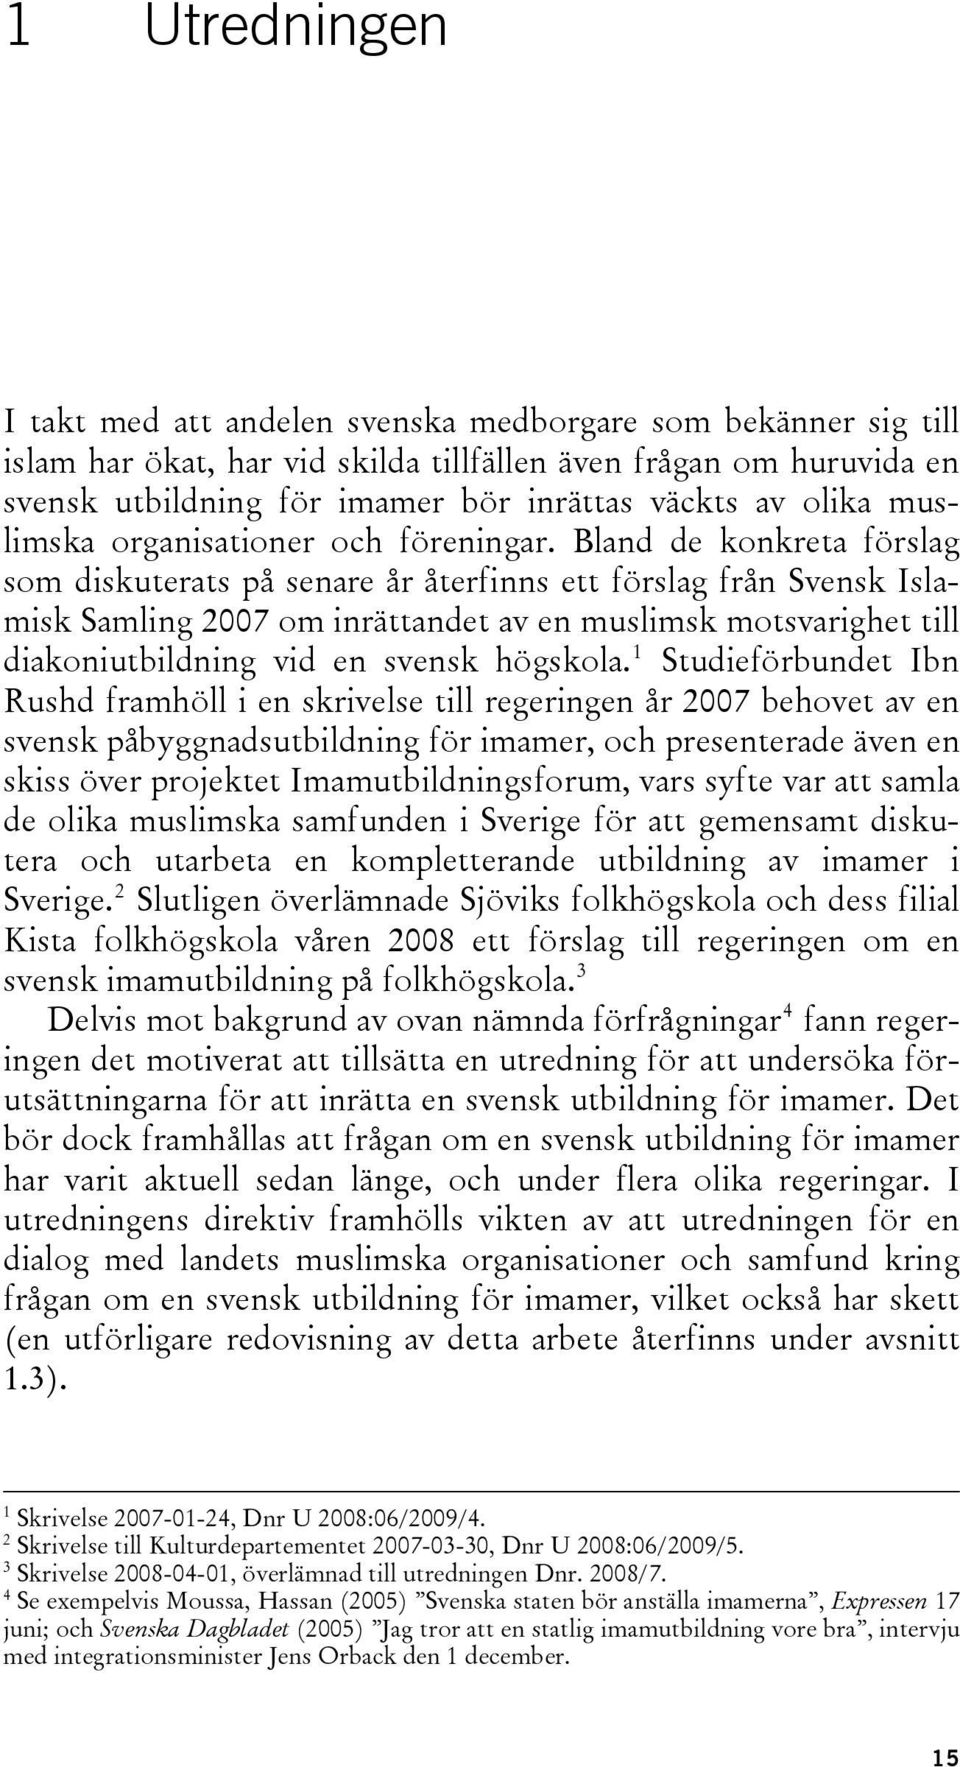 Bland de konkreta förslag som diskuterats på senare år återfinns ett förslag från Svensk Islamisk Samling 2007 om inrättandet av en muslimsk motsvarighet till diakoniutbildning vid en svensk högskola.